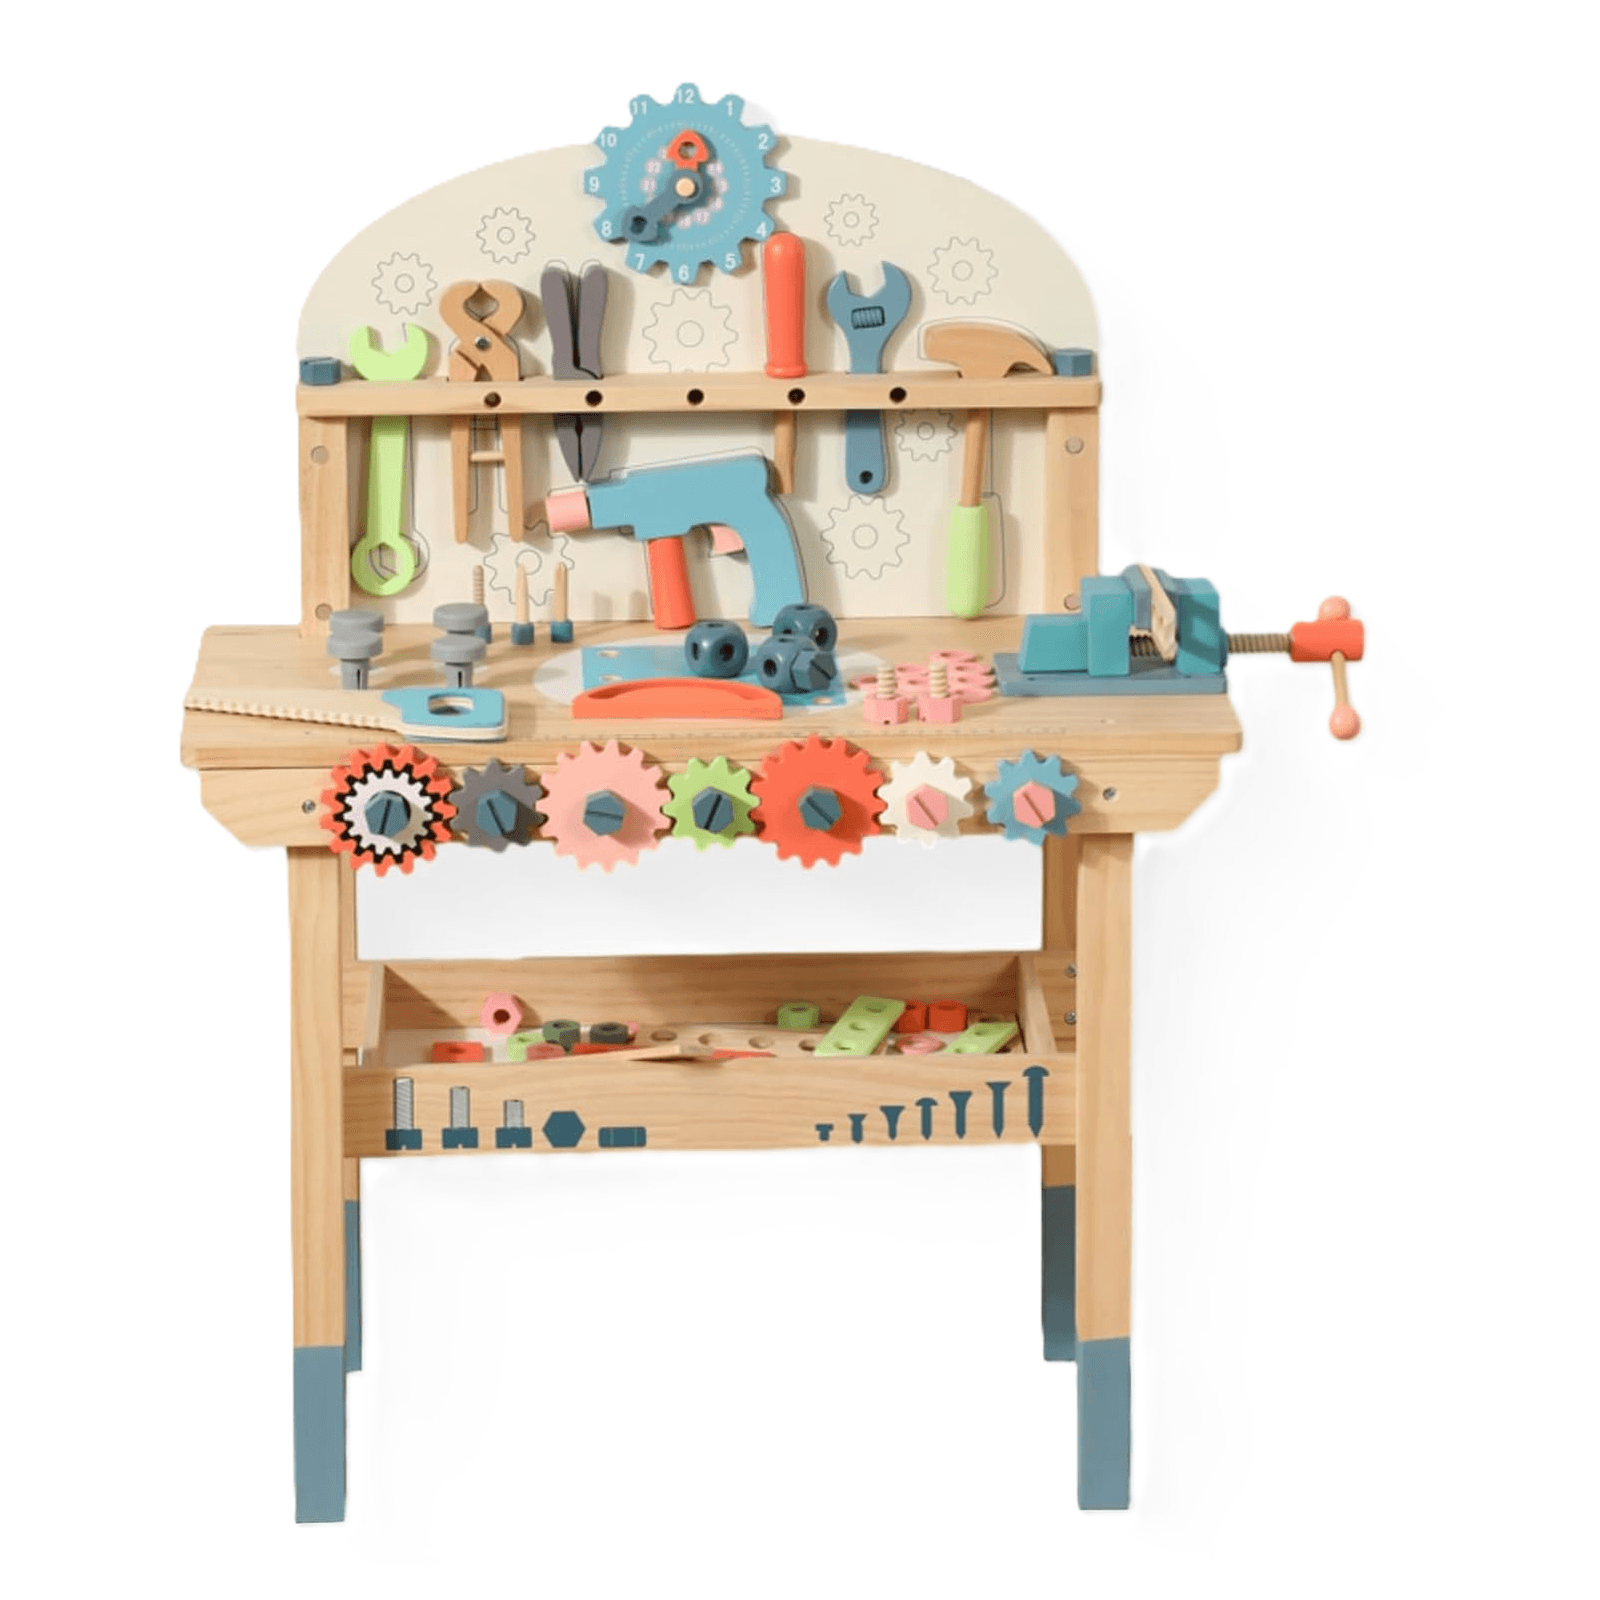 Montessori WoodenEdu Tool Workbench Toy